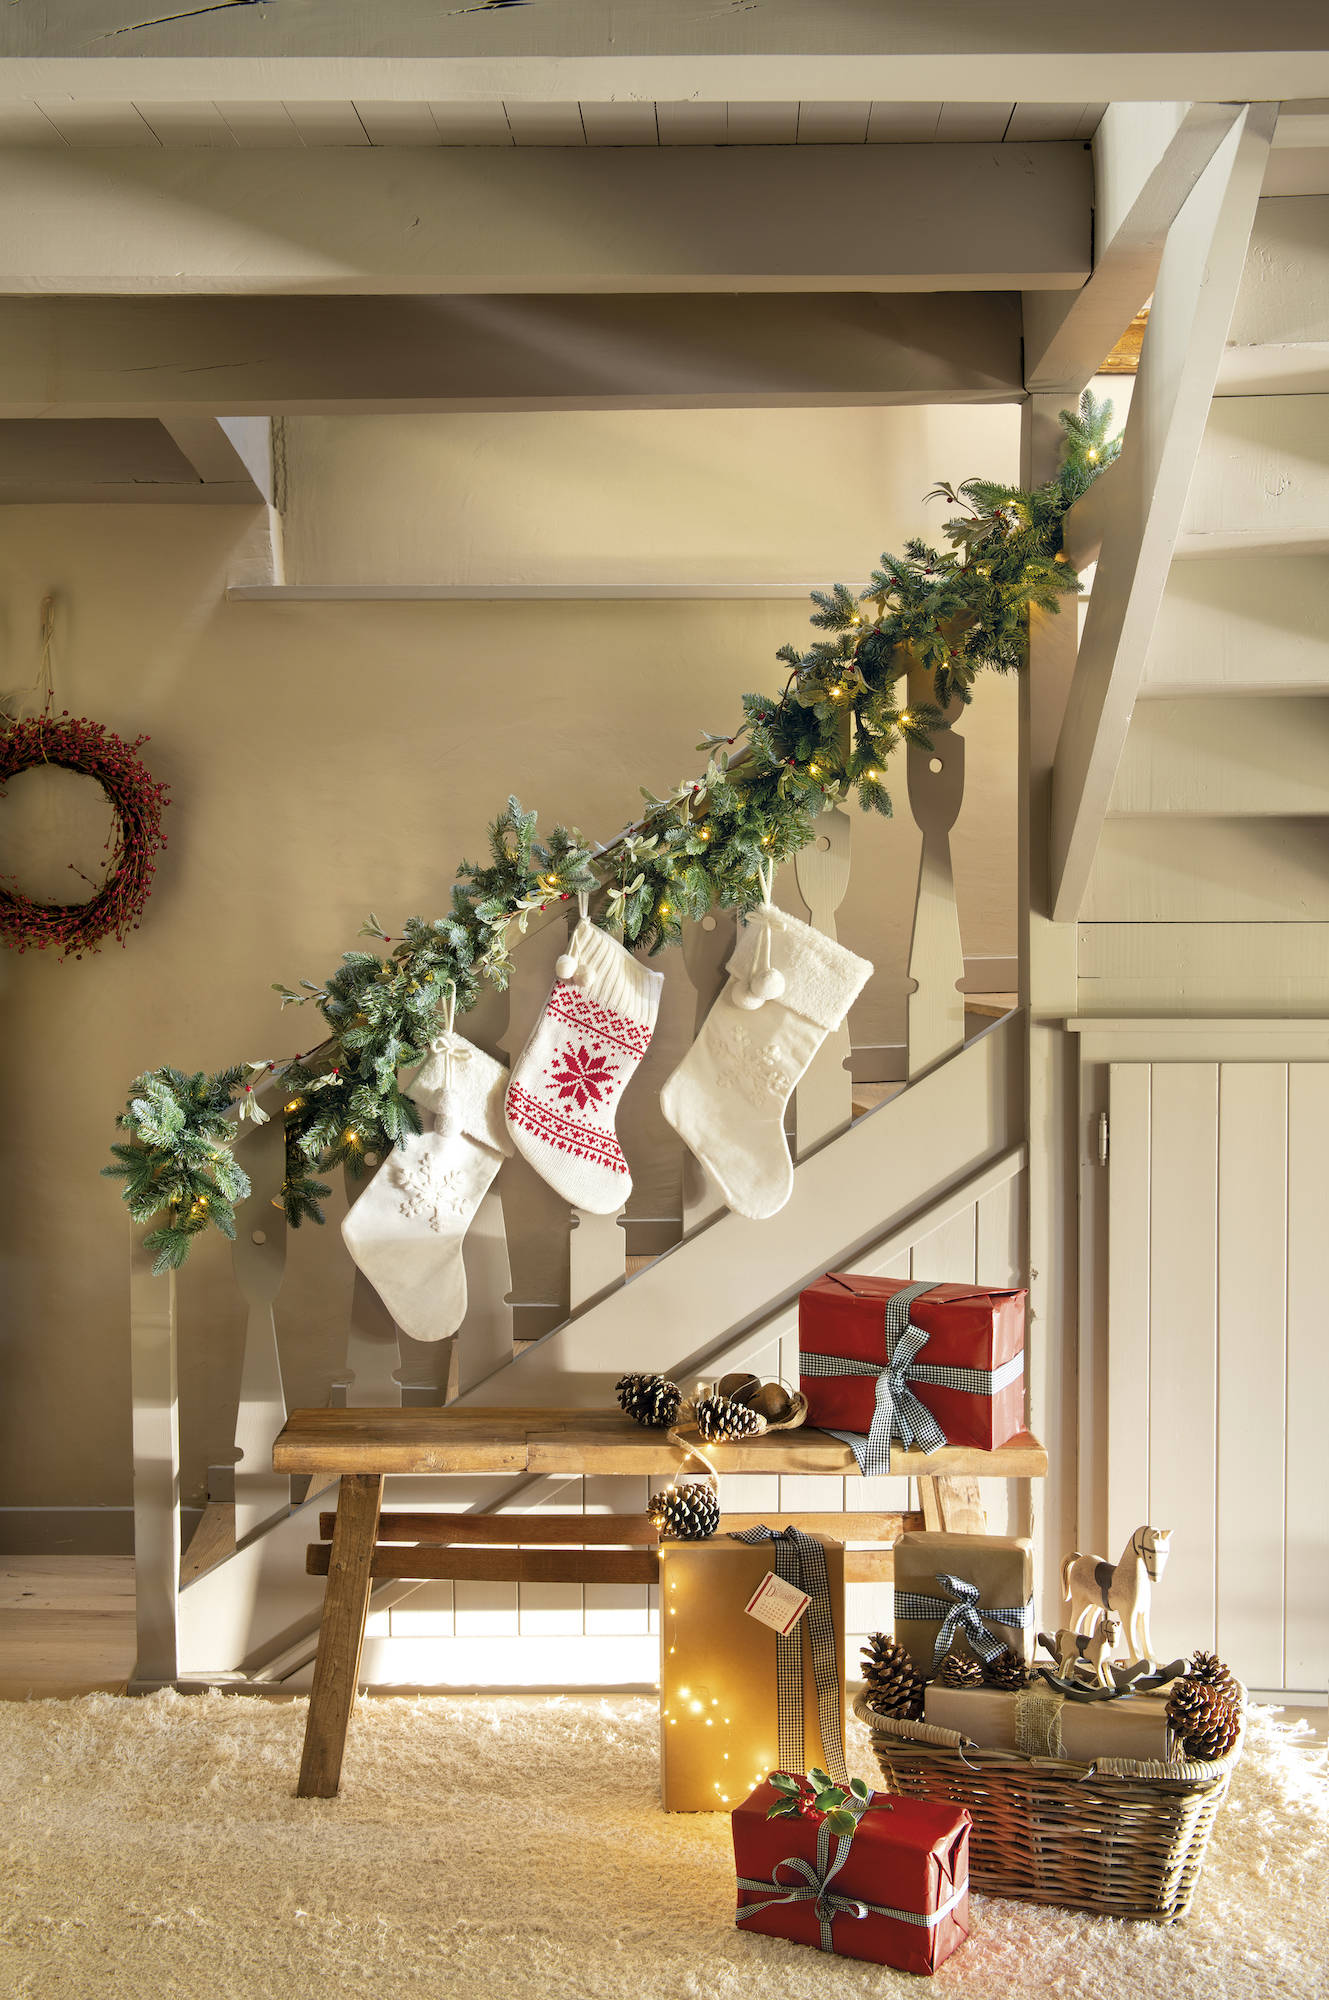 Escalera decorada por Navidad con calcetines.